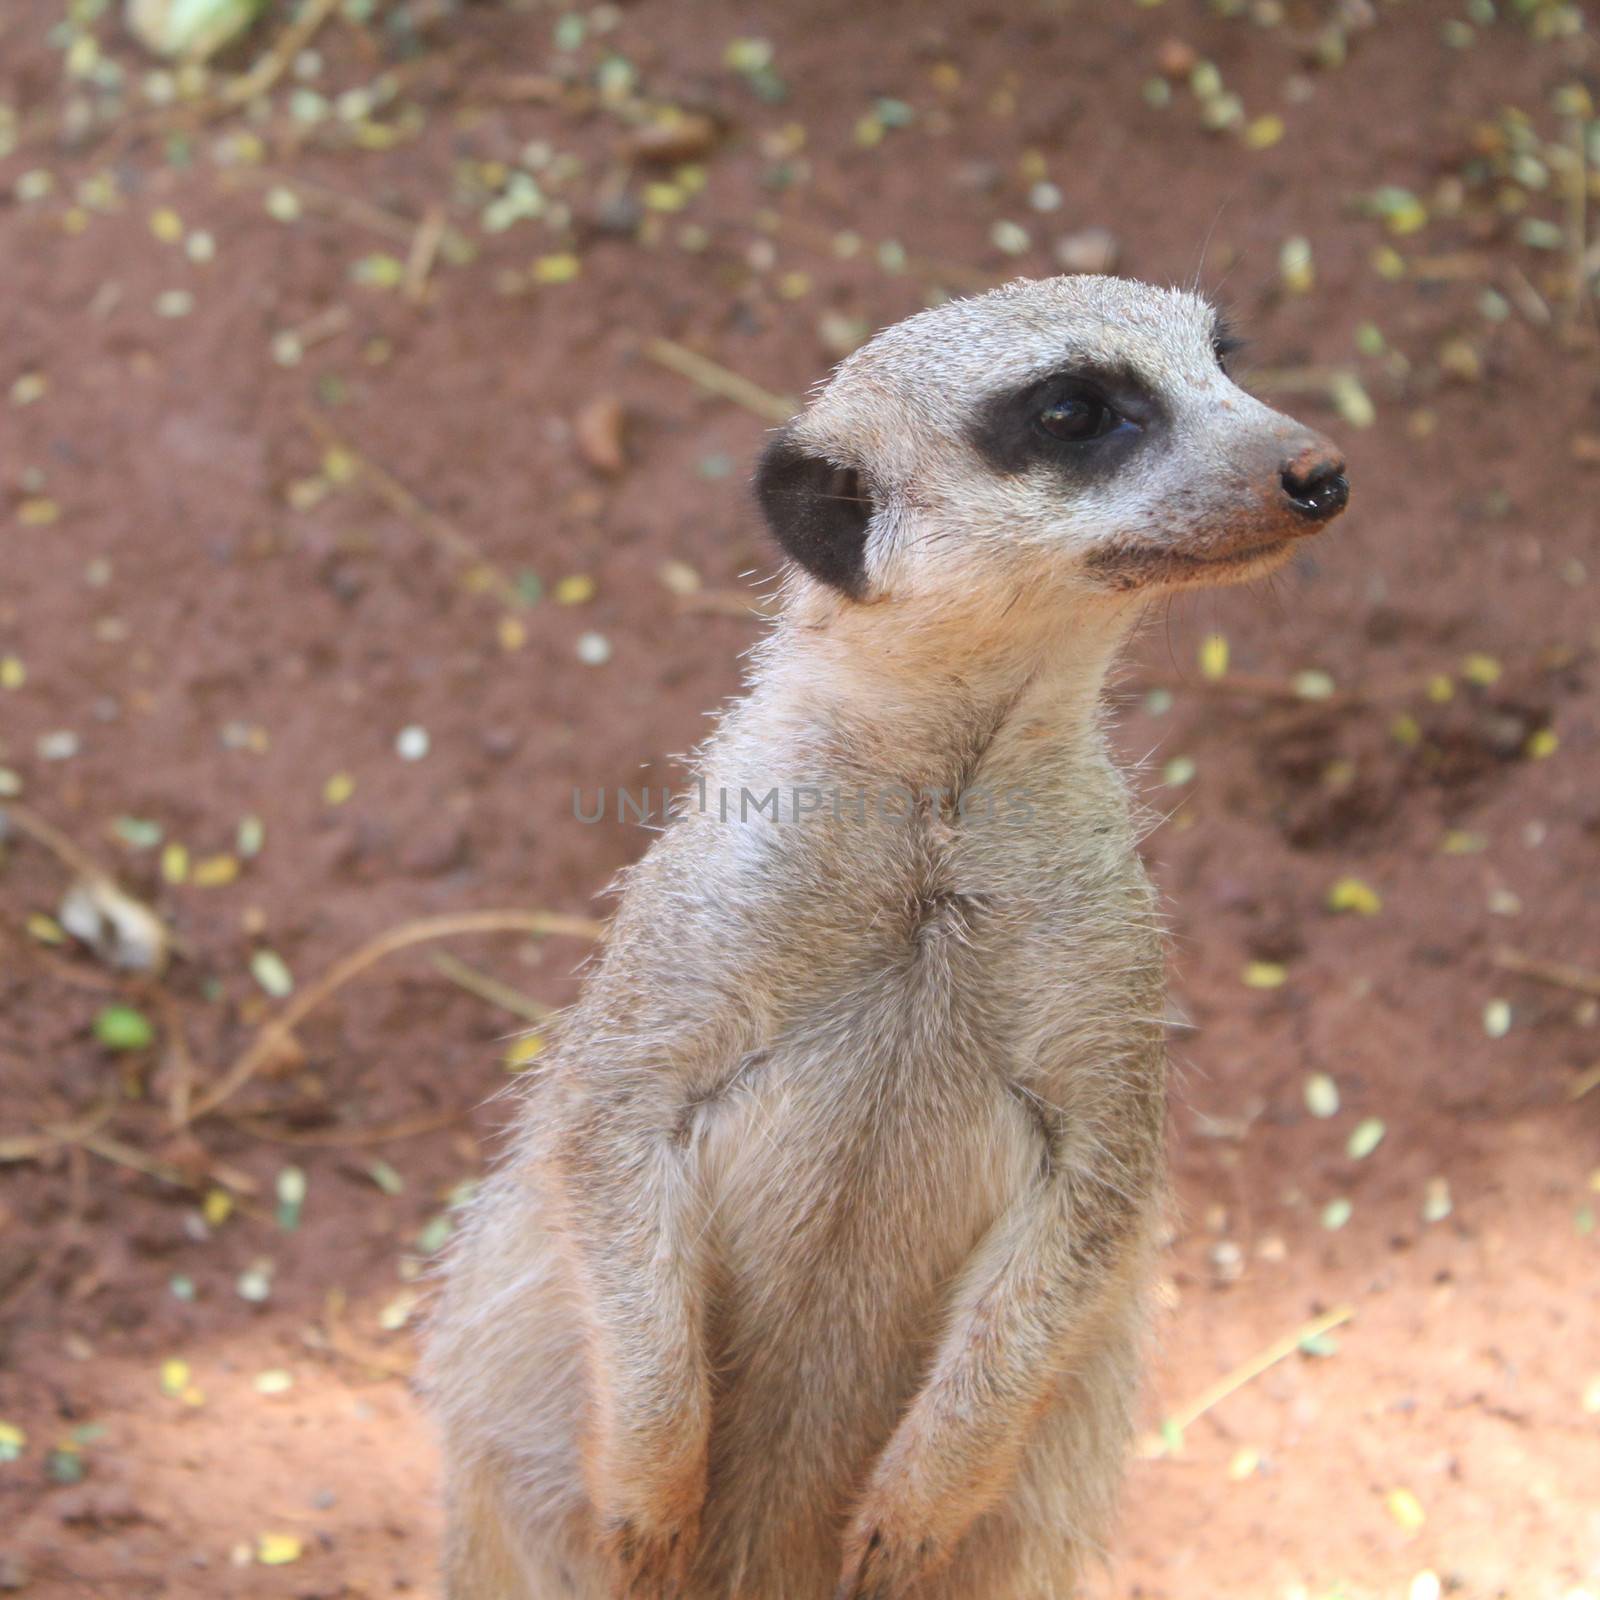 Surricate meerkat standing upright by JackyBrown